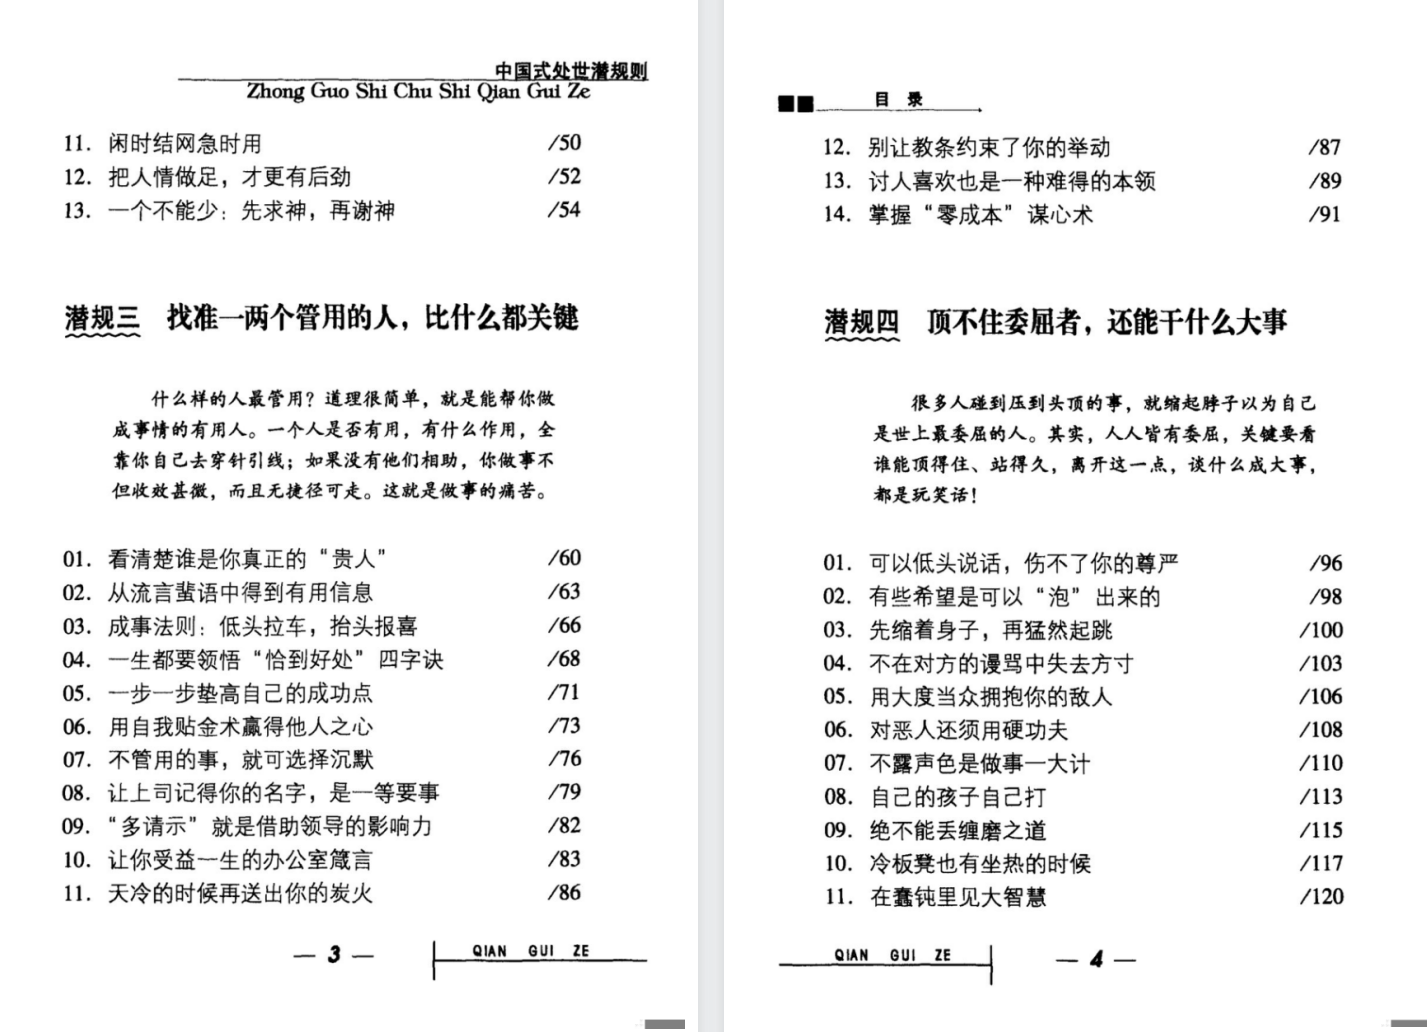 中国式处世潜规则[无水印]「百度网盘下载」PDF 电子书插图4